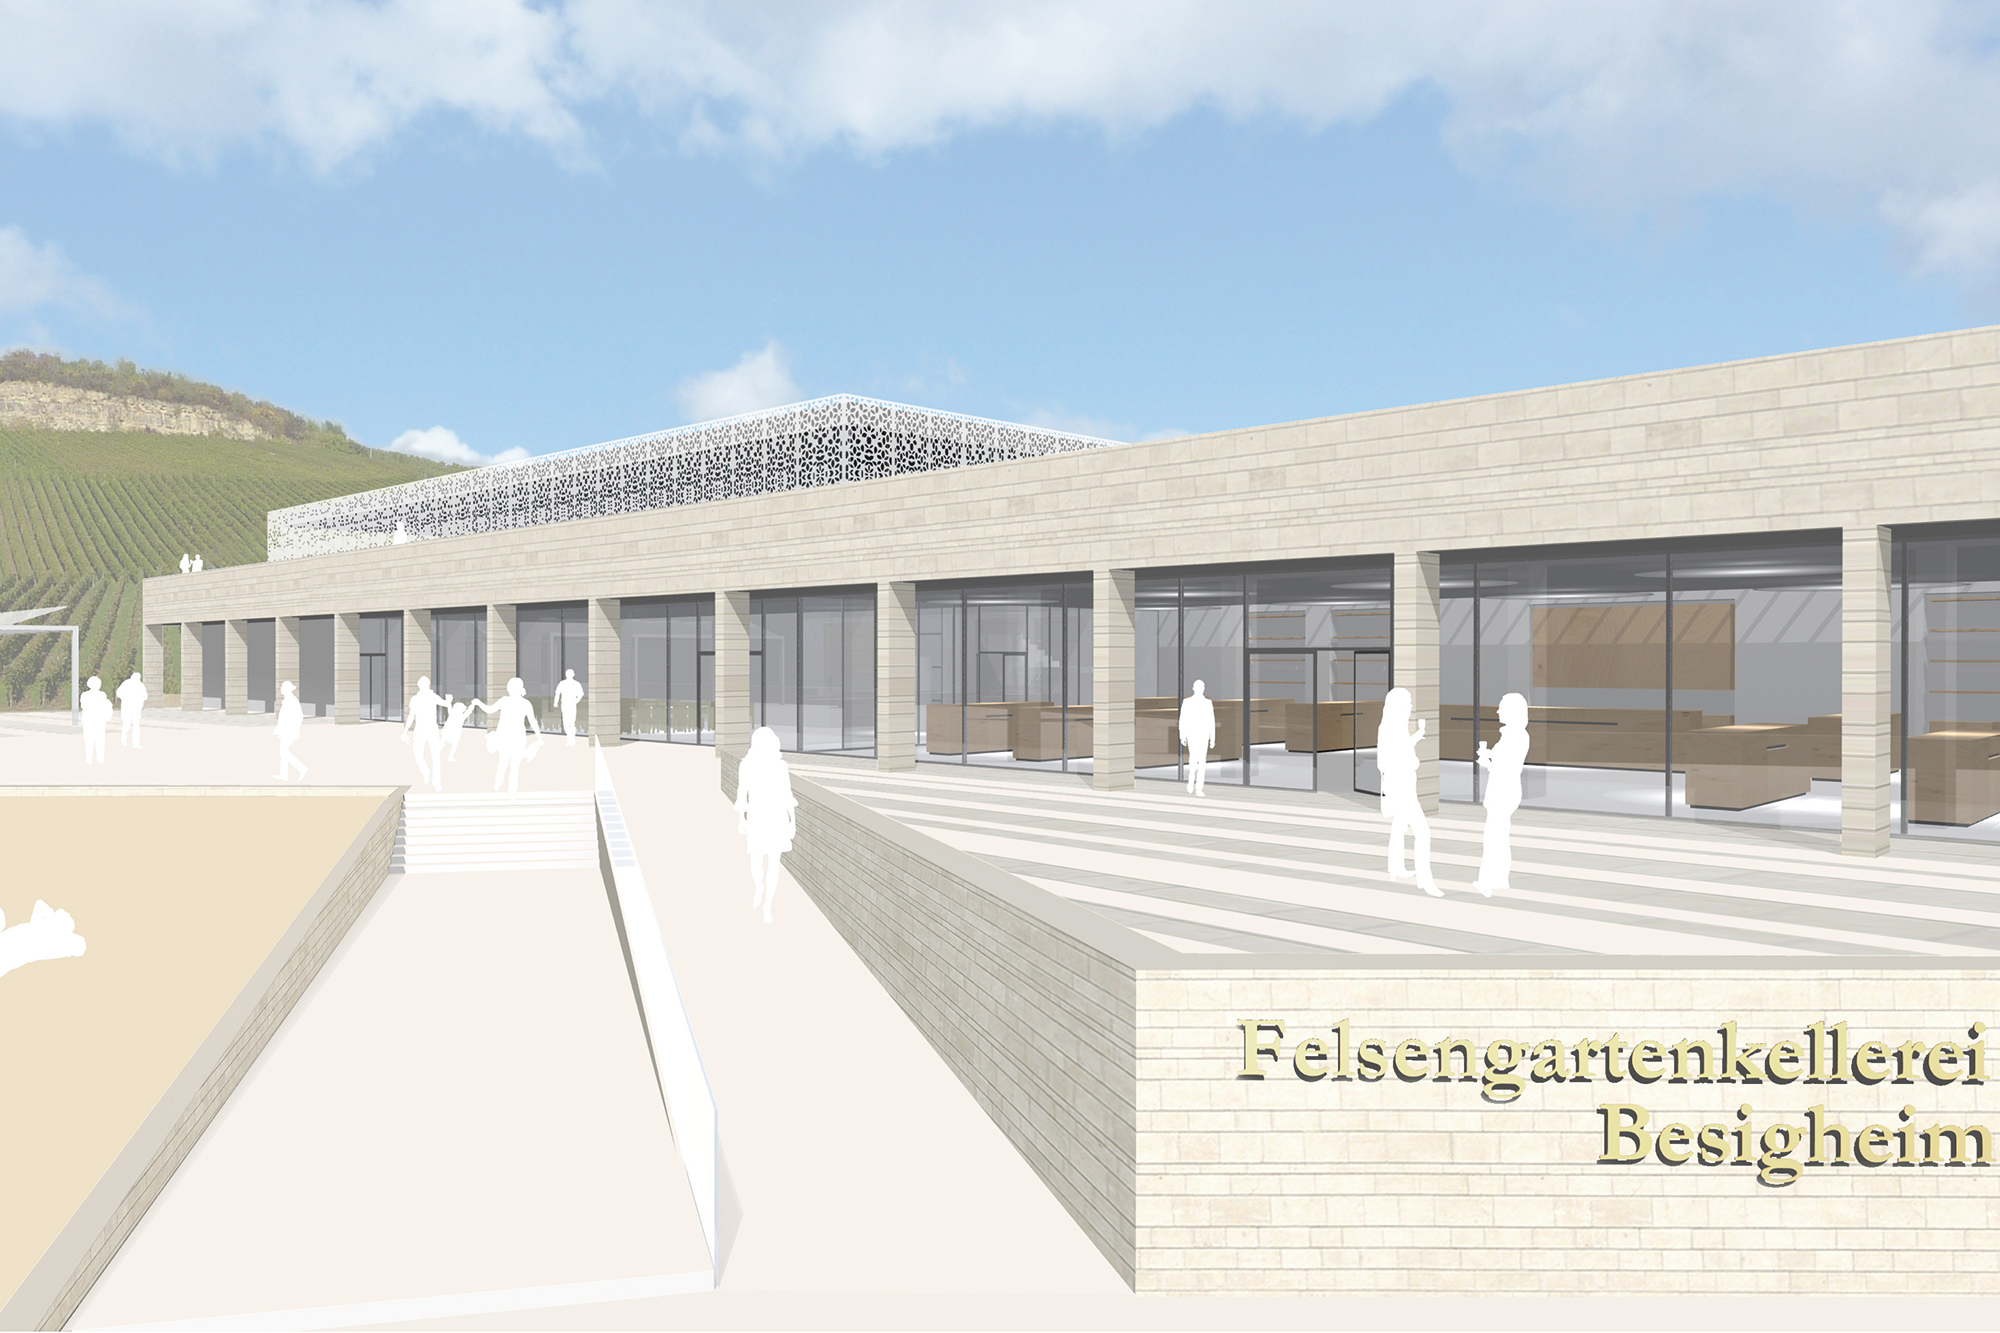 Umbau und Erweiterung der Felsengartenkellerei Besigheim